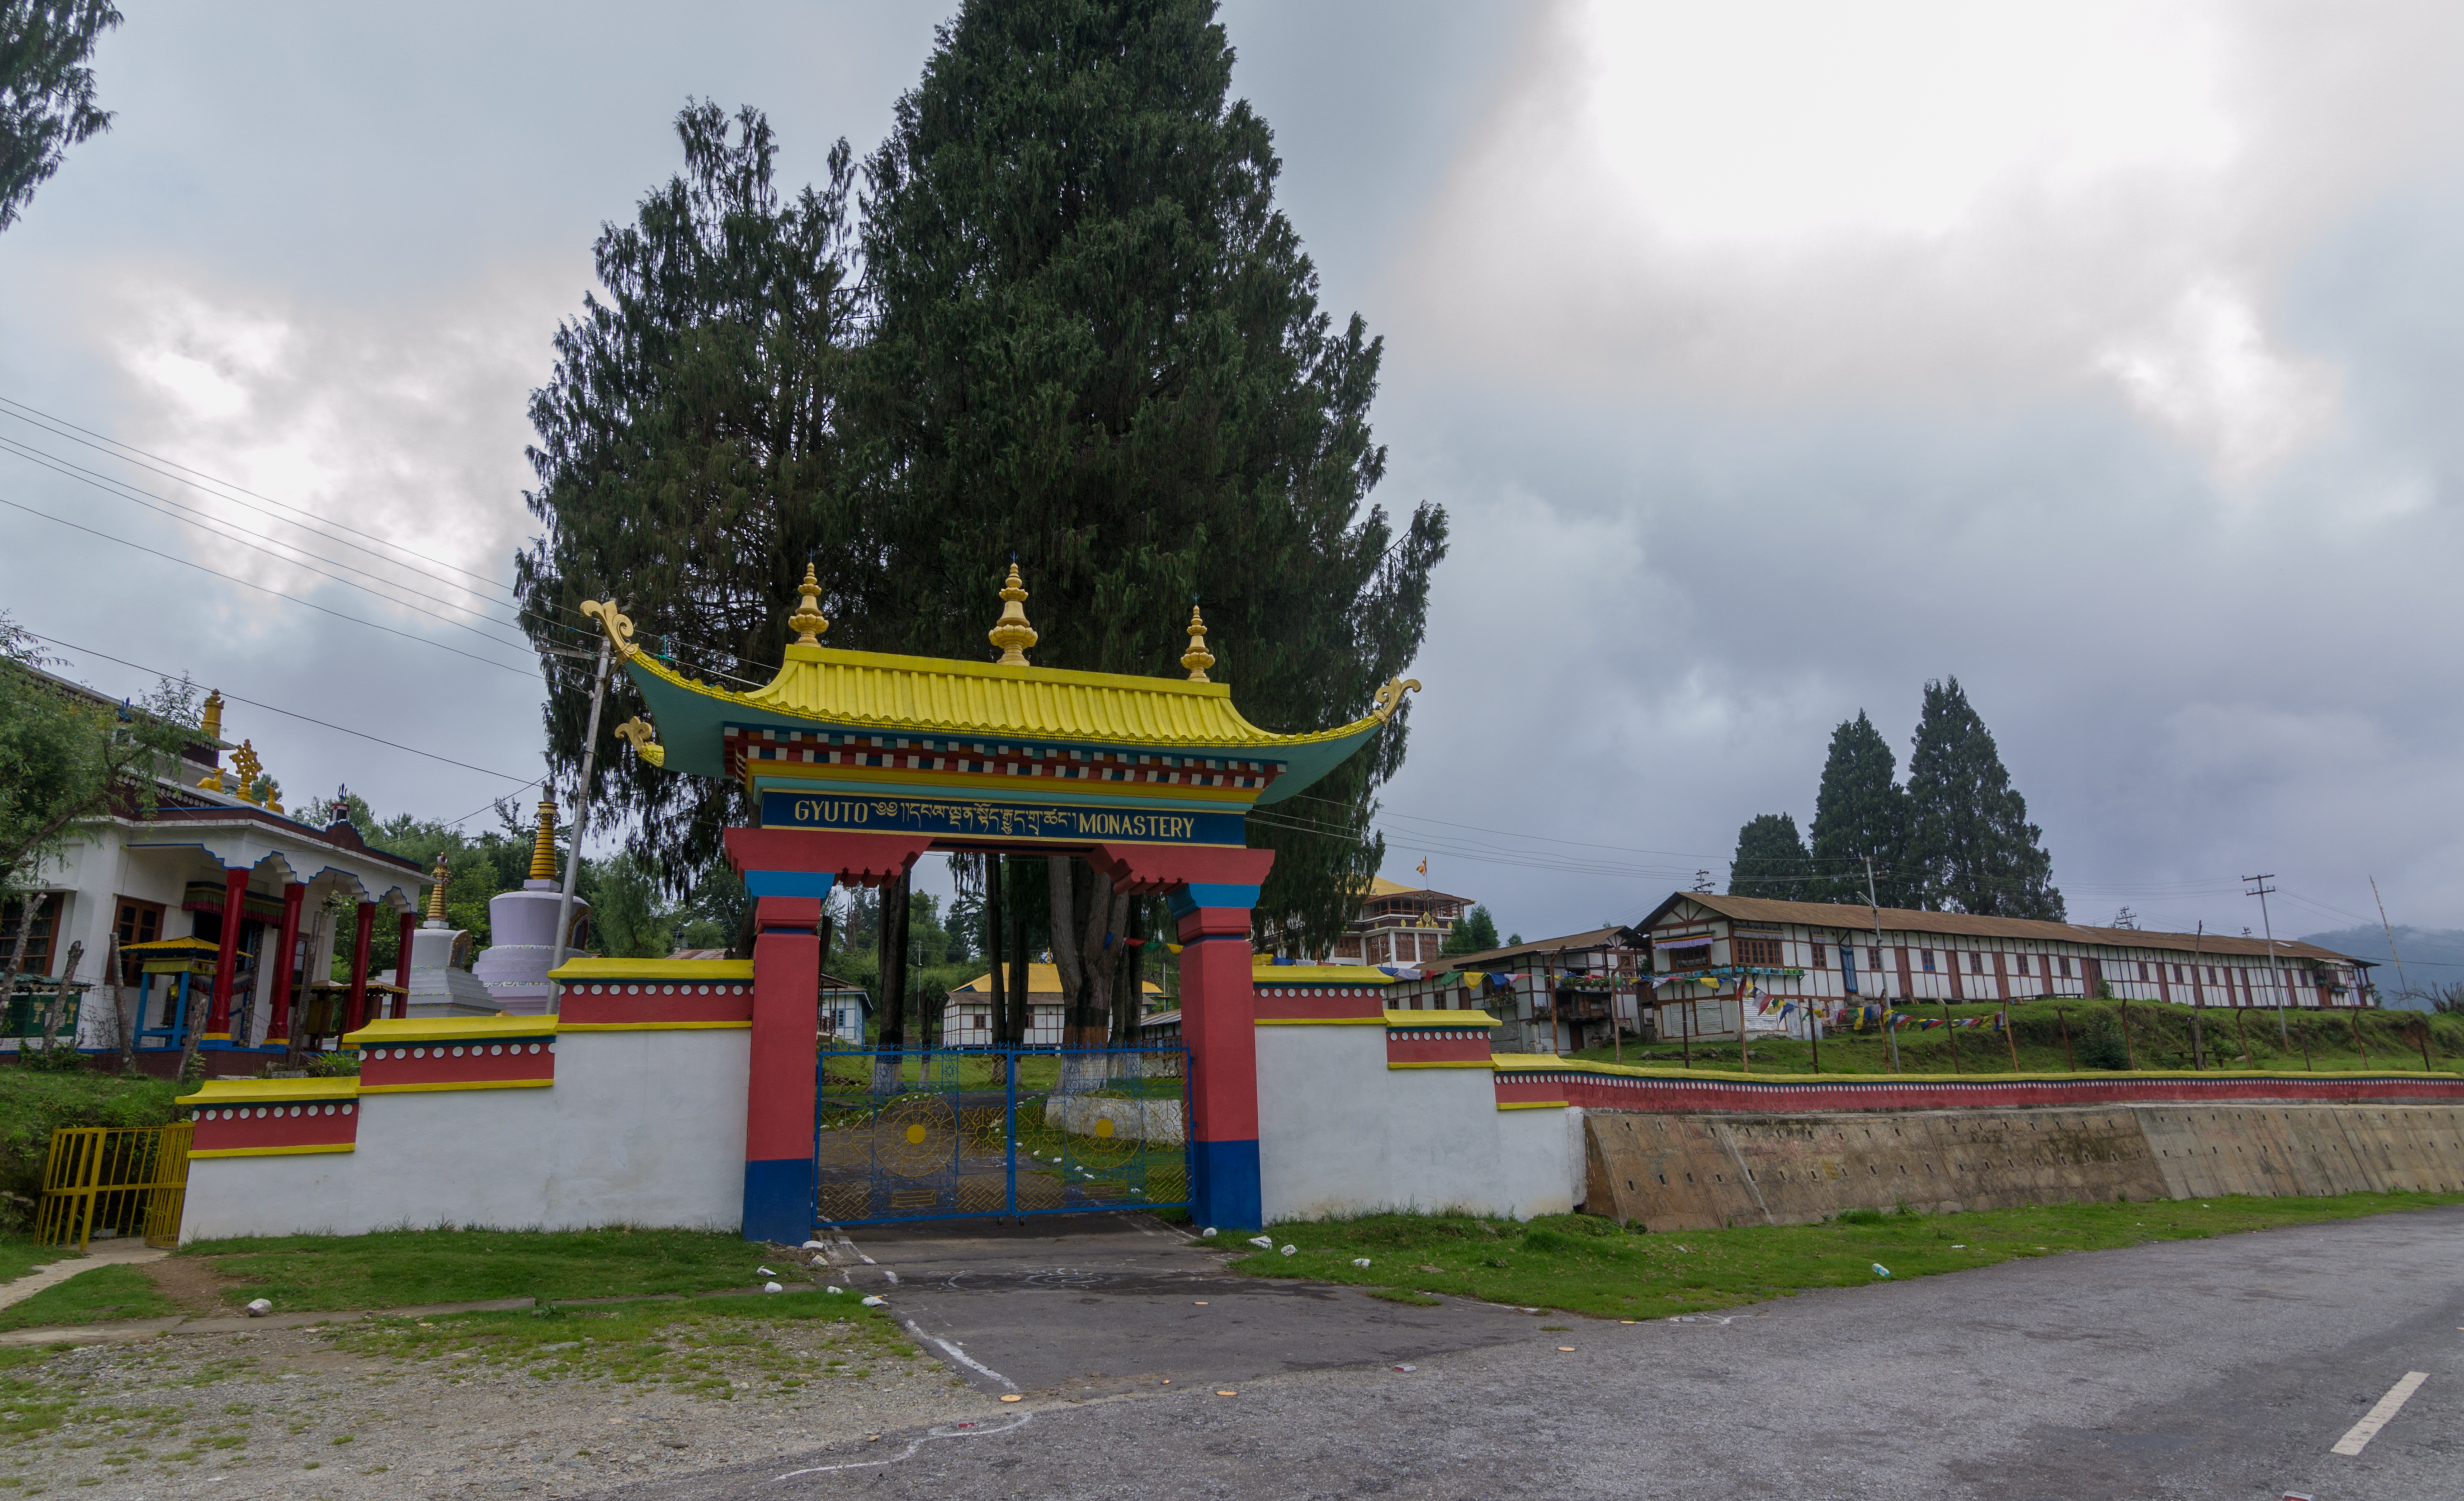 guyto monastery tenzin gaon